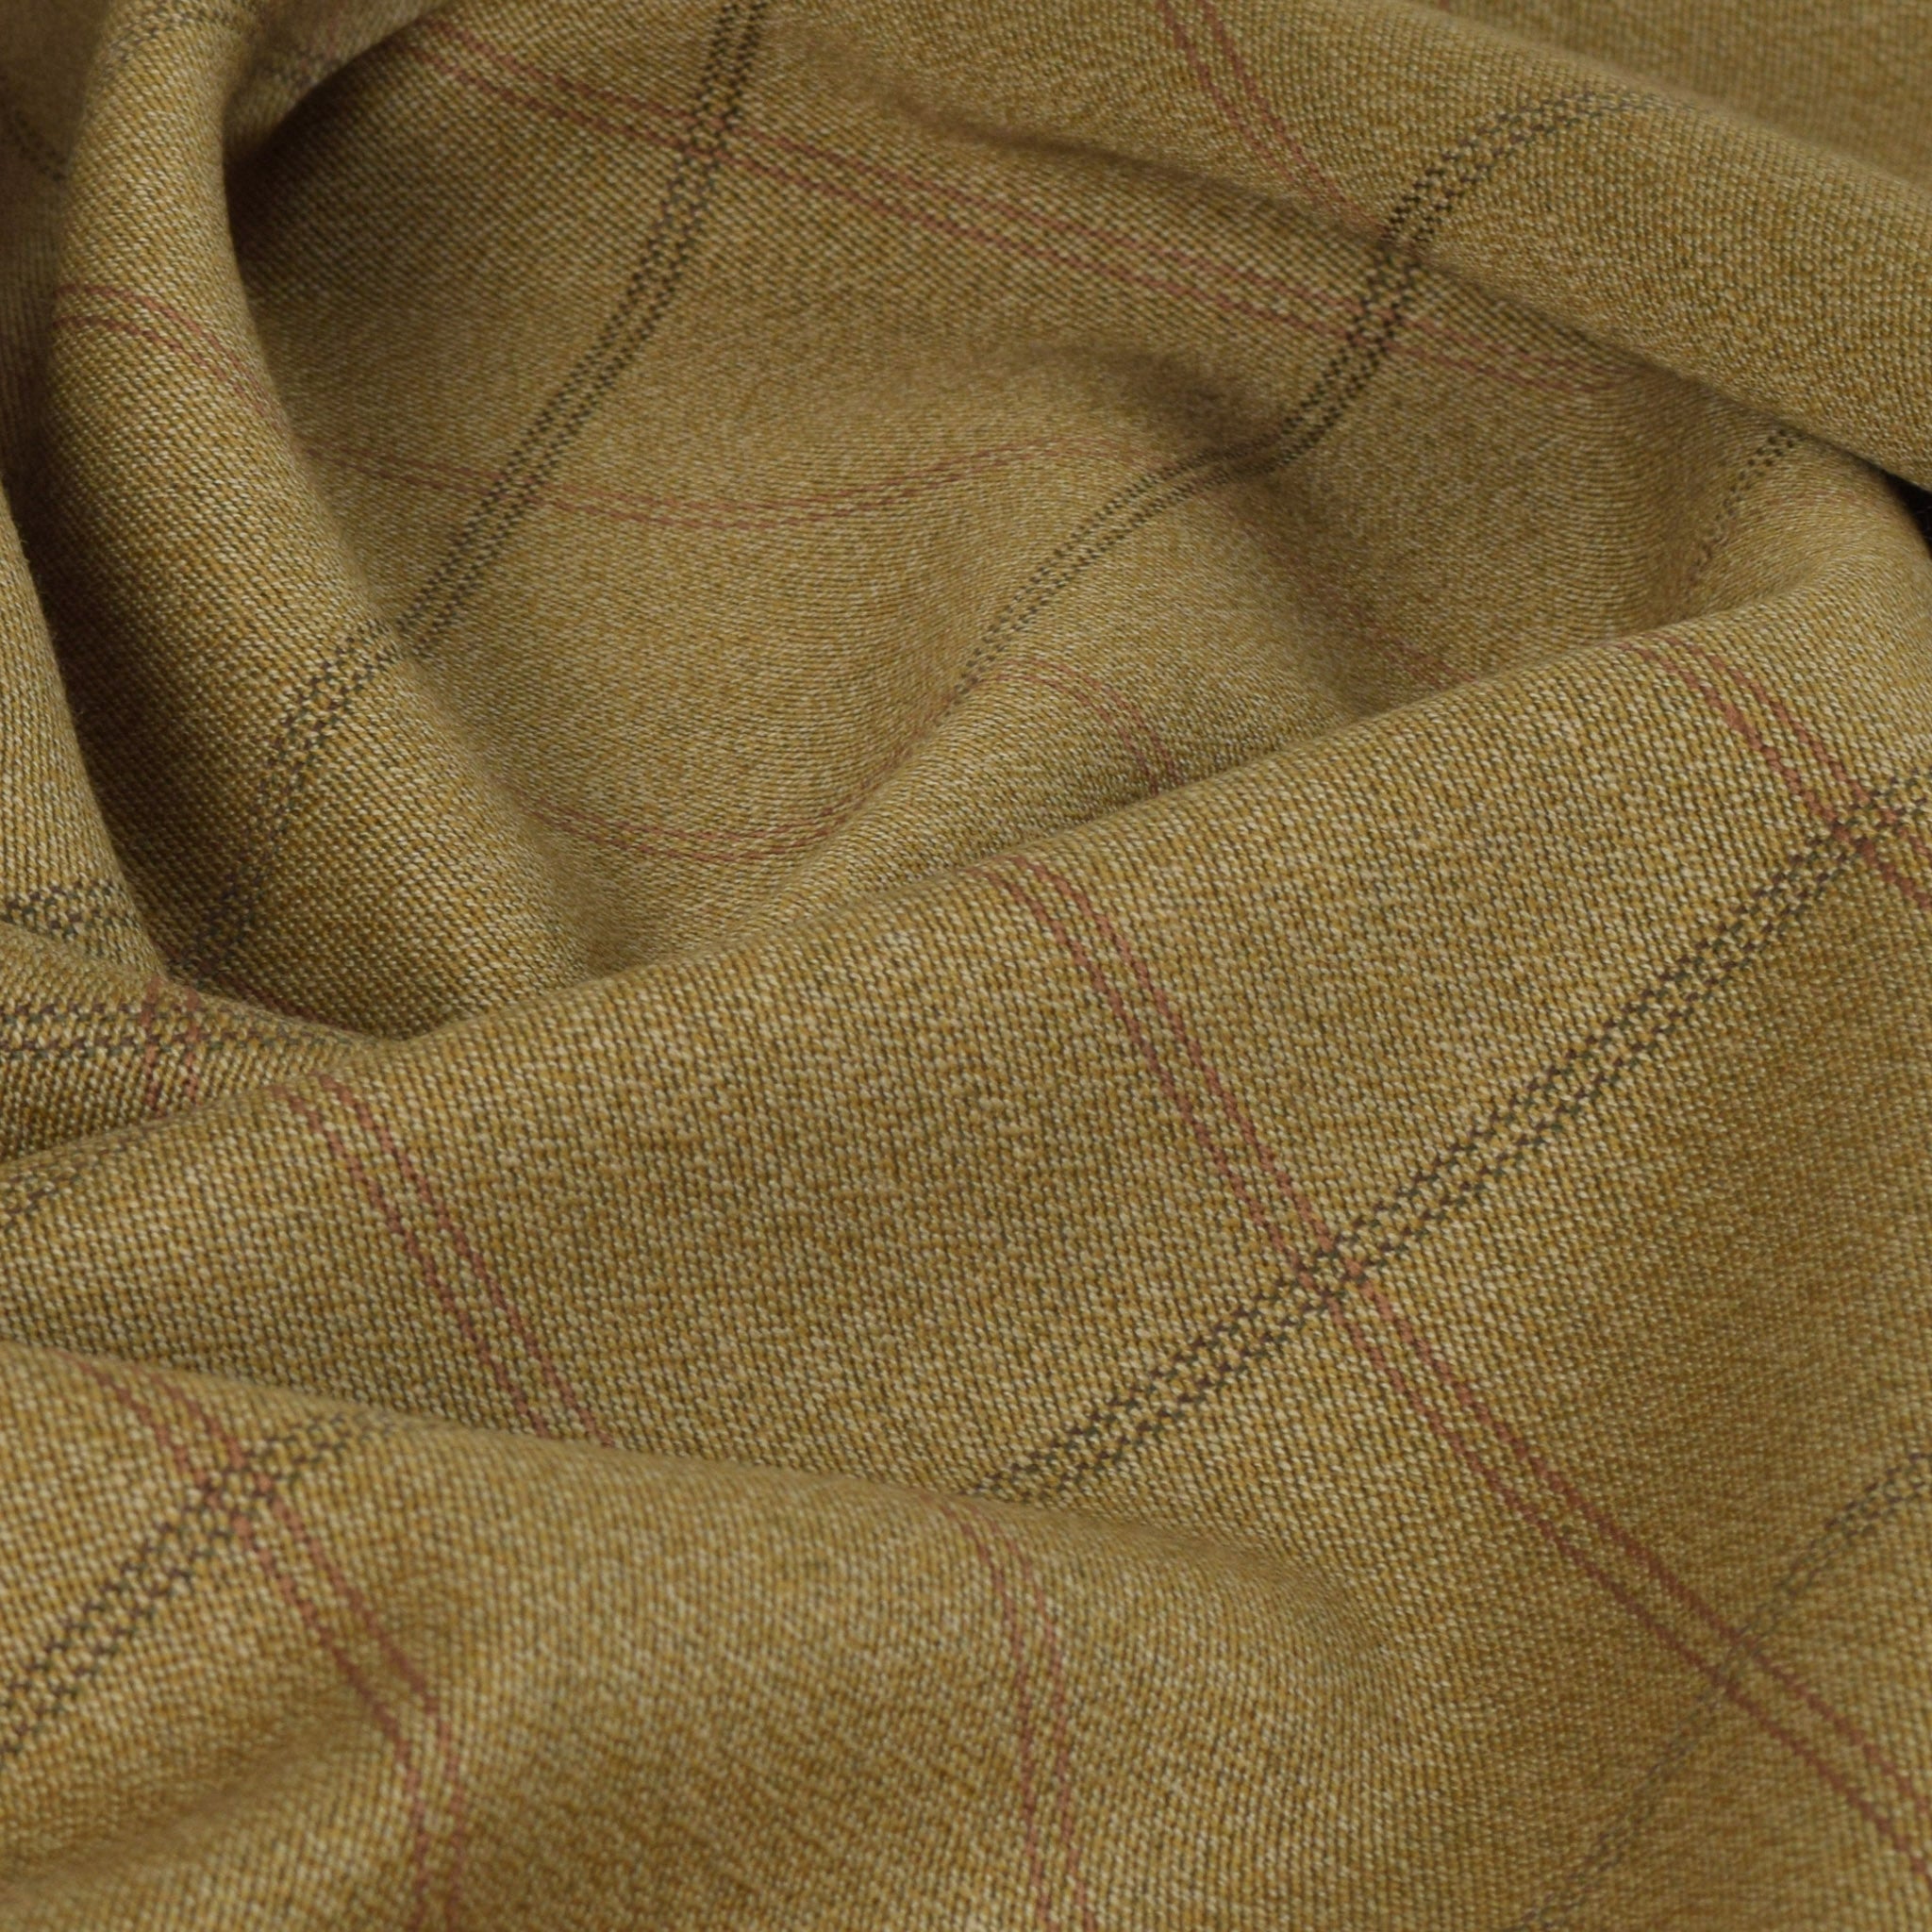 Khaki Beige Jacket Fabric 5302 - Fabrics4Fashion